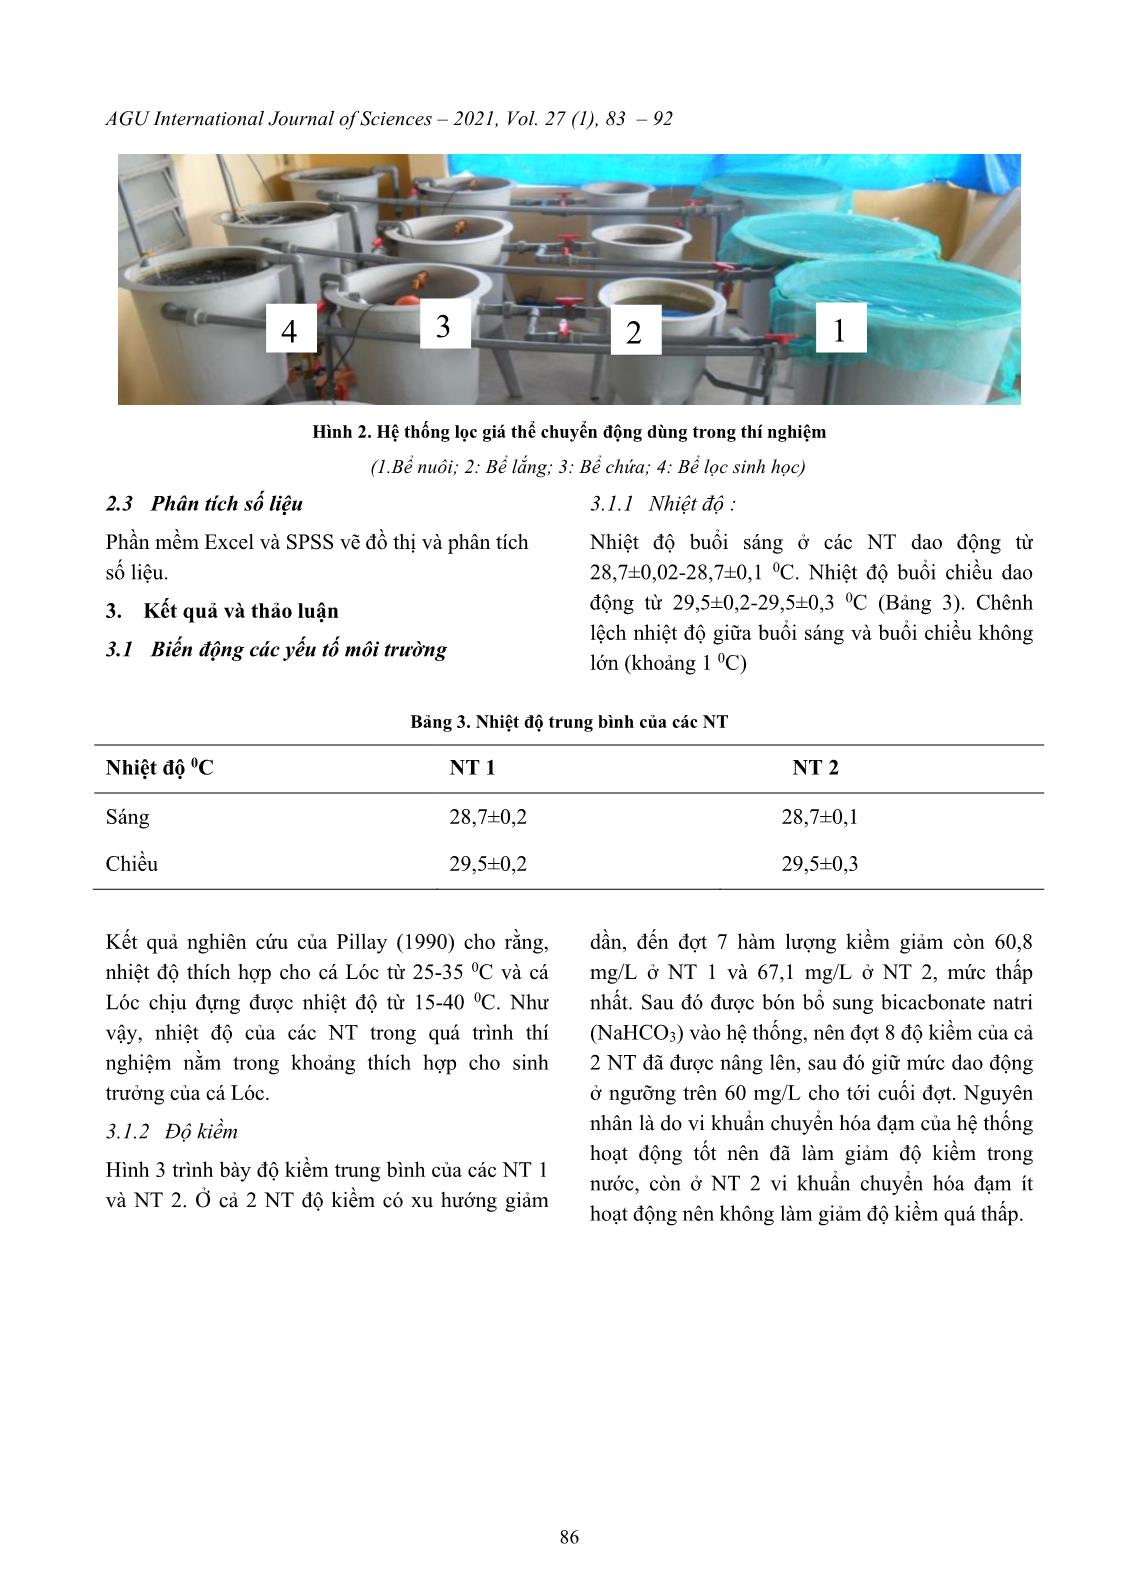 Khảo sát biến động chất lượng nước trong hệ thống tuần hoàn nuôi cá lóc (channa striata) trang 4